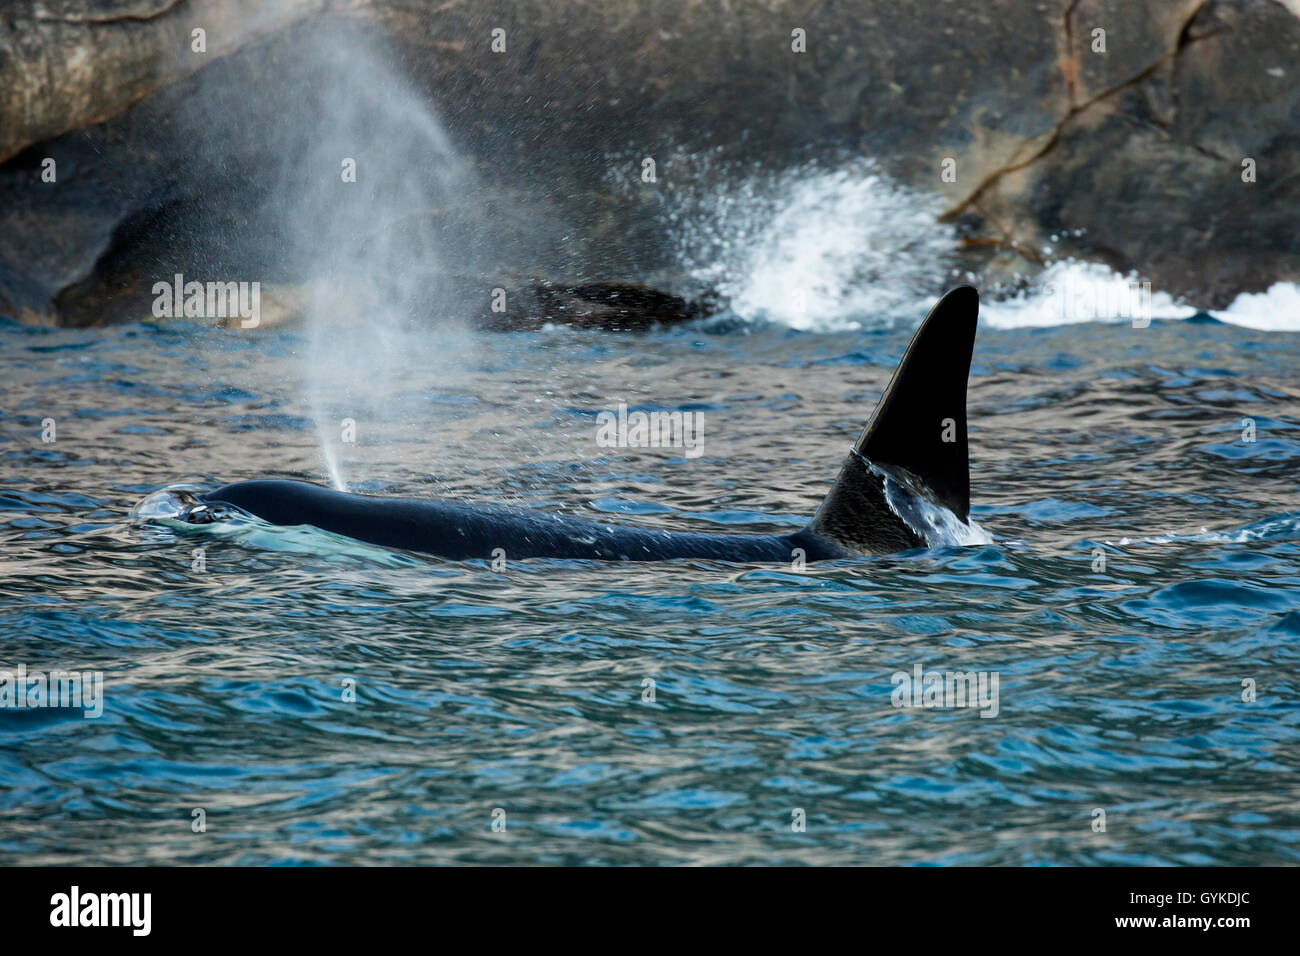 Orca, grand, de l'épaulard (Orcinus orca) grampus, exhalant grand mâle nageant dans la proximité de la plage, vue latérale, la Norvège, Troms, Senja Banque D'Images